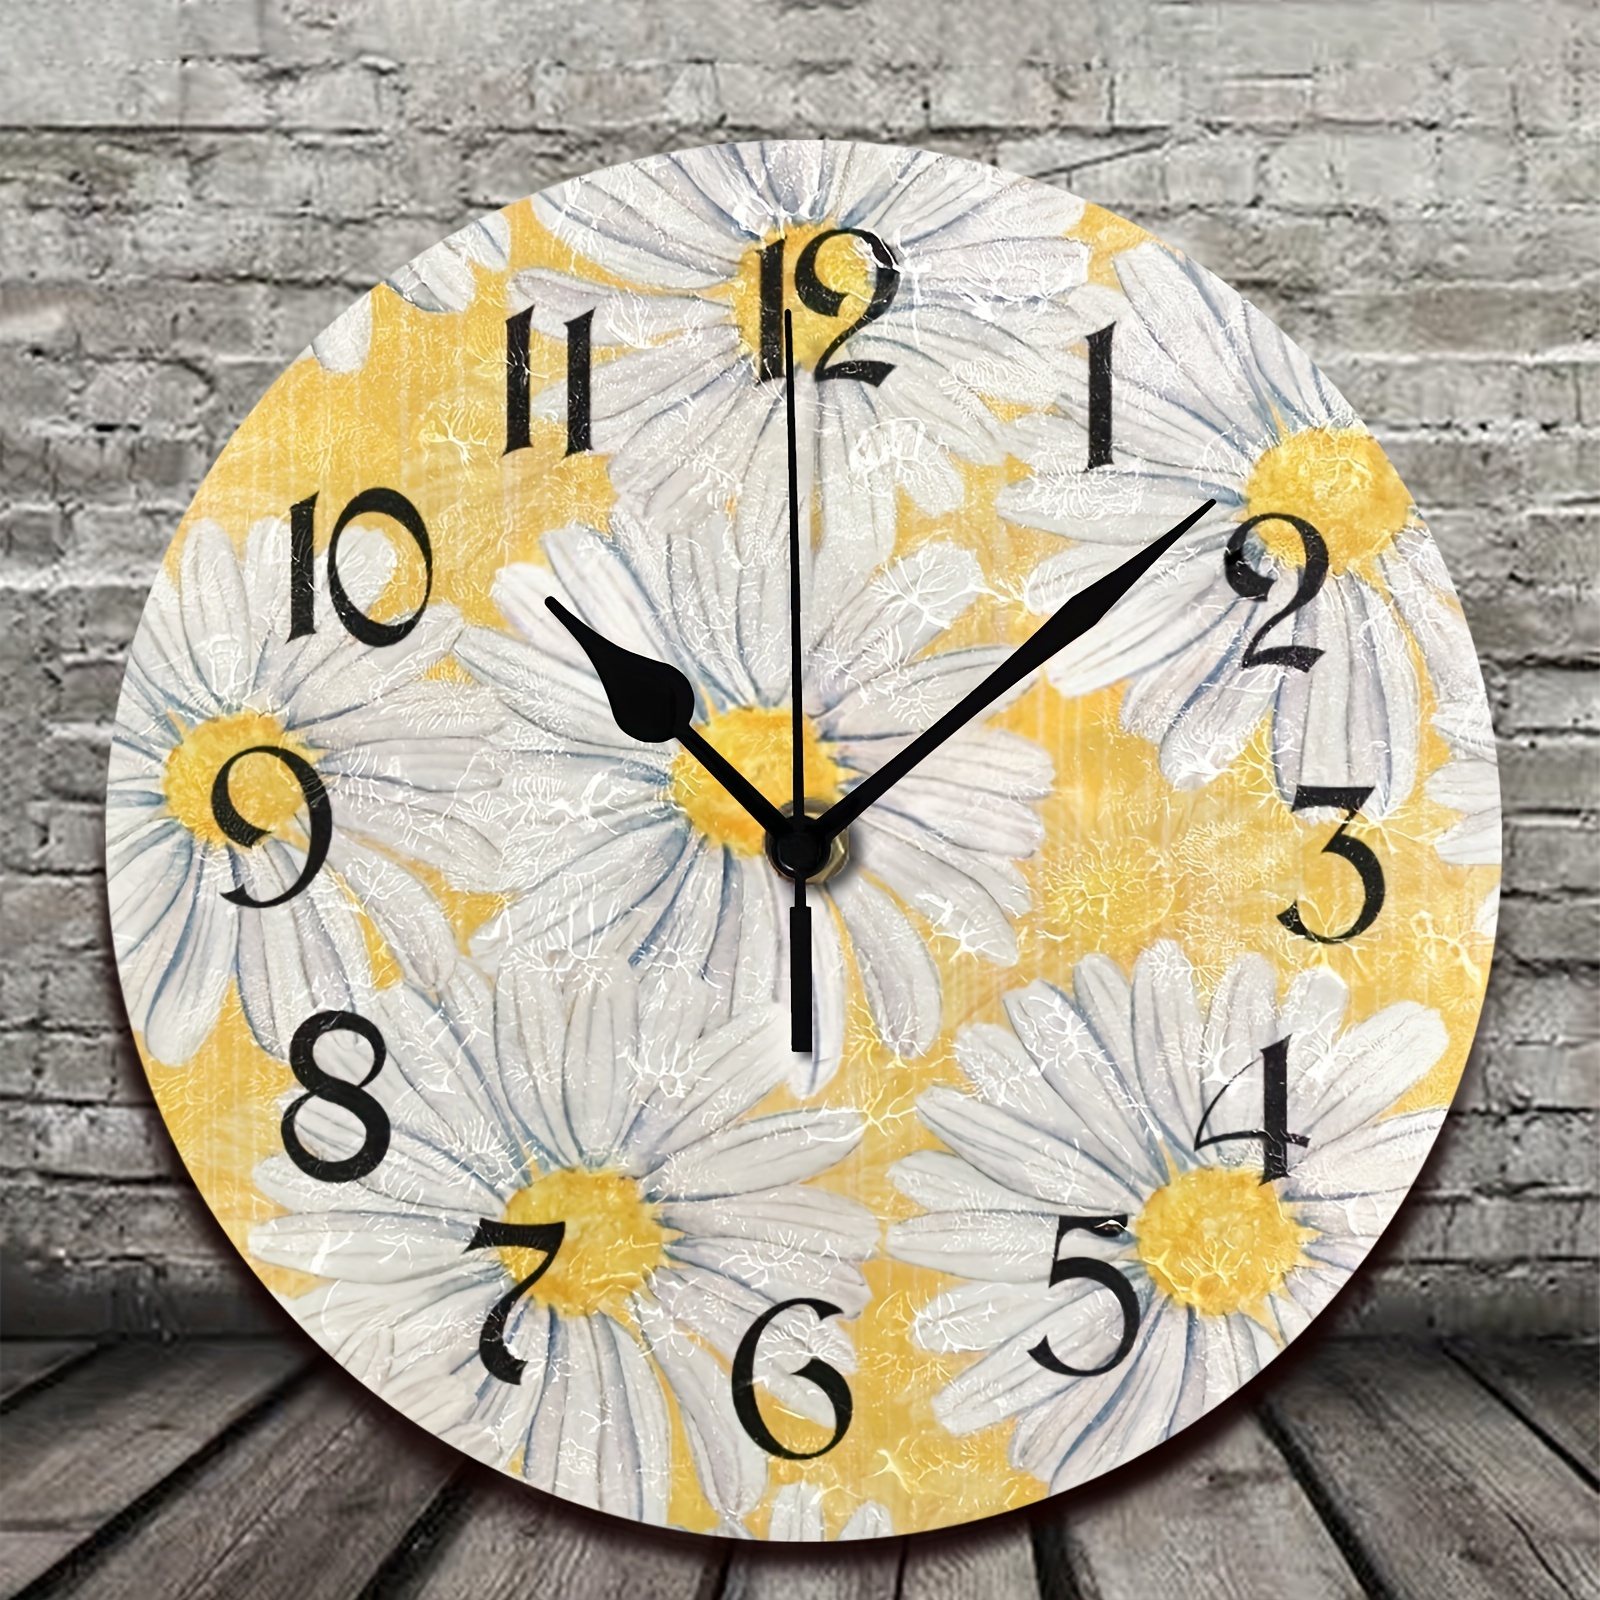 Reloj de pared vintage floral de 15 pulgadas, silencioso sin tictac,  funciona con pilas, relojes de pared de madera retro con flores de granja